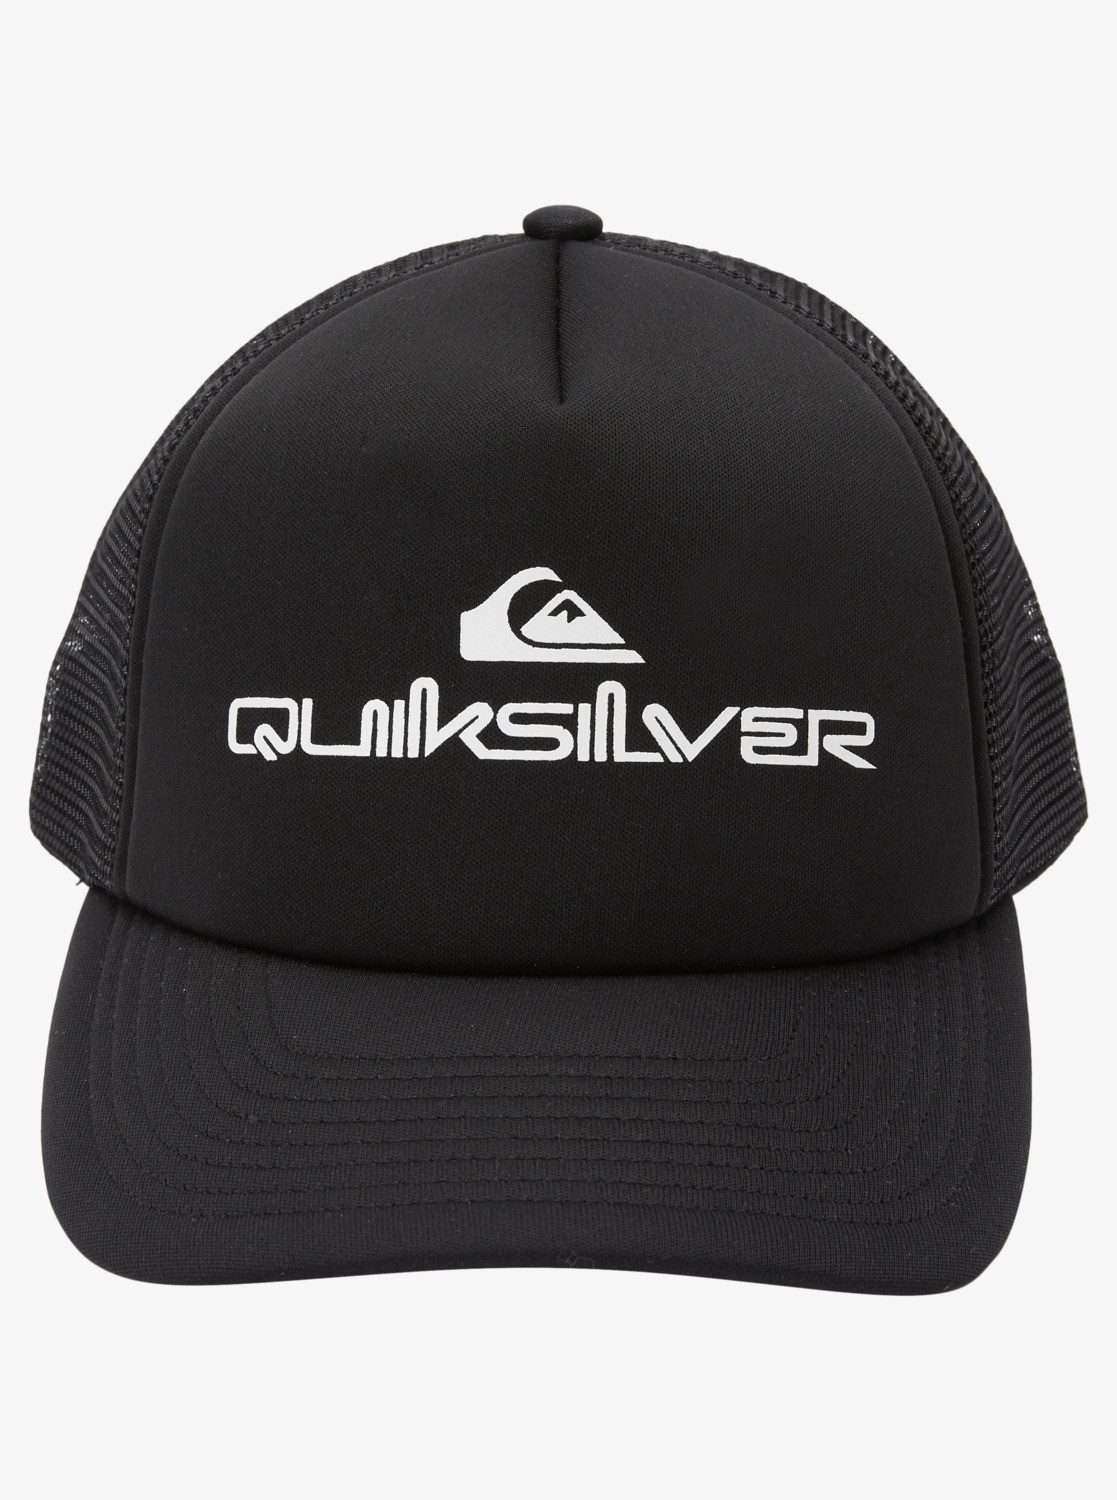 Quiksilver Trucker Cap Black Omnistack